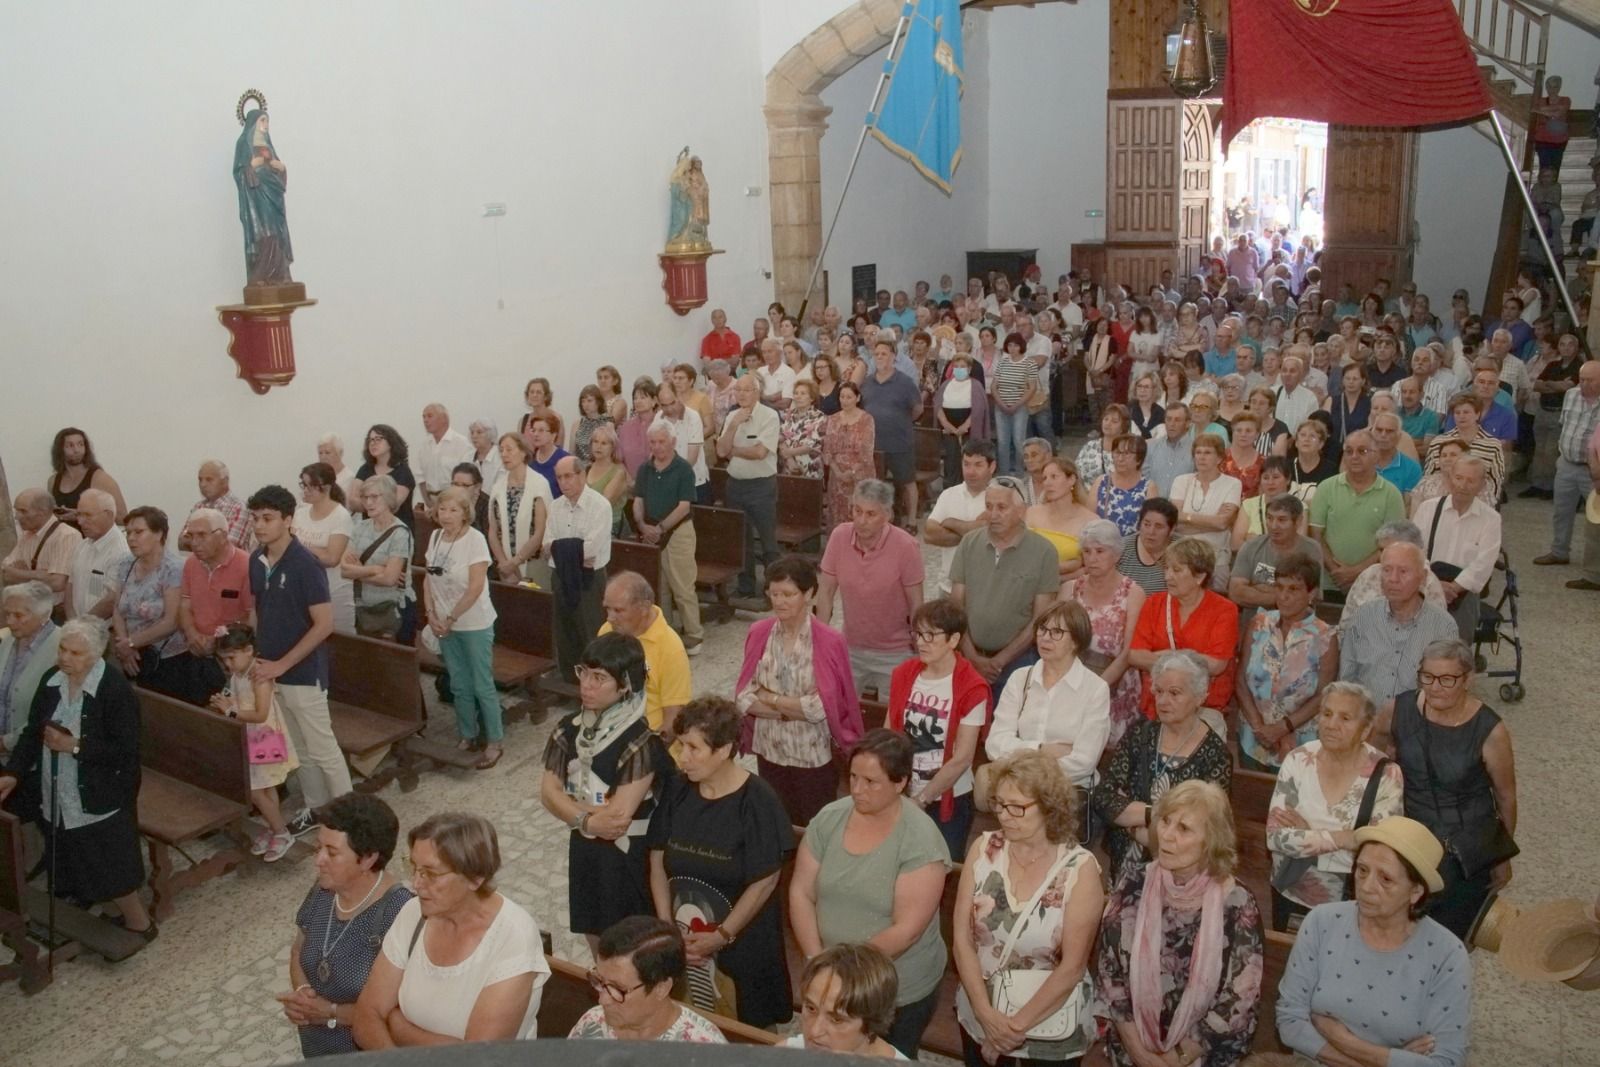 GALERÍA | Fiesta de la Virgen de la Salud en Alcañices